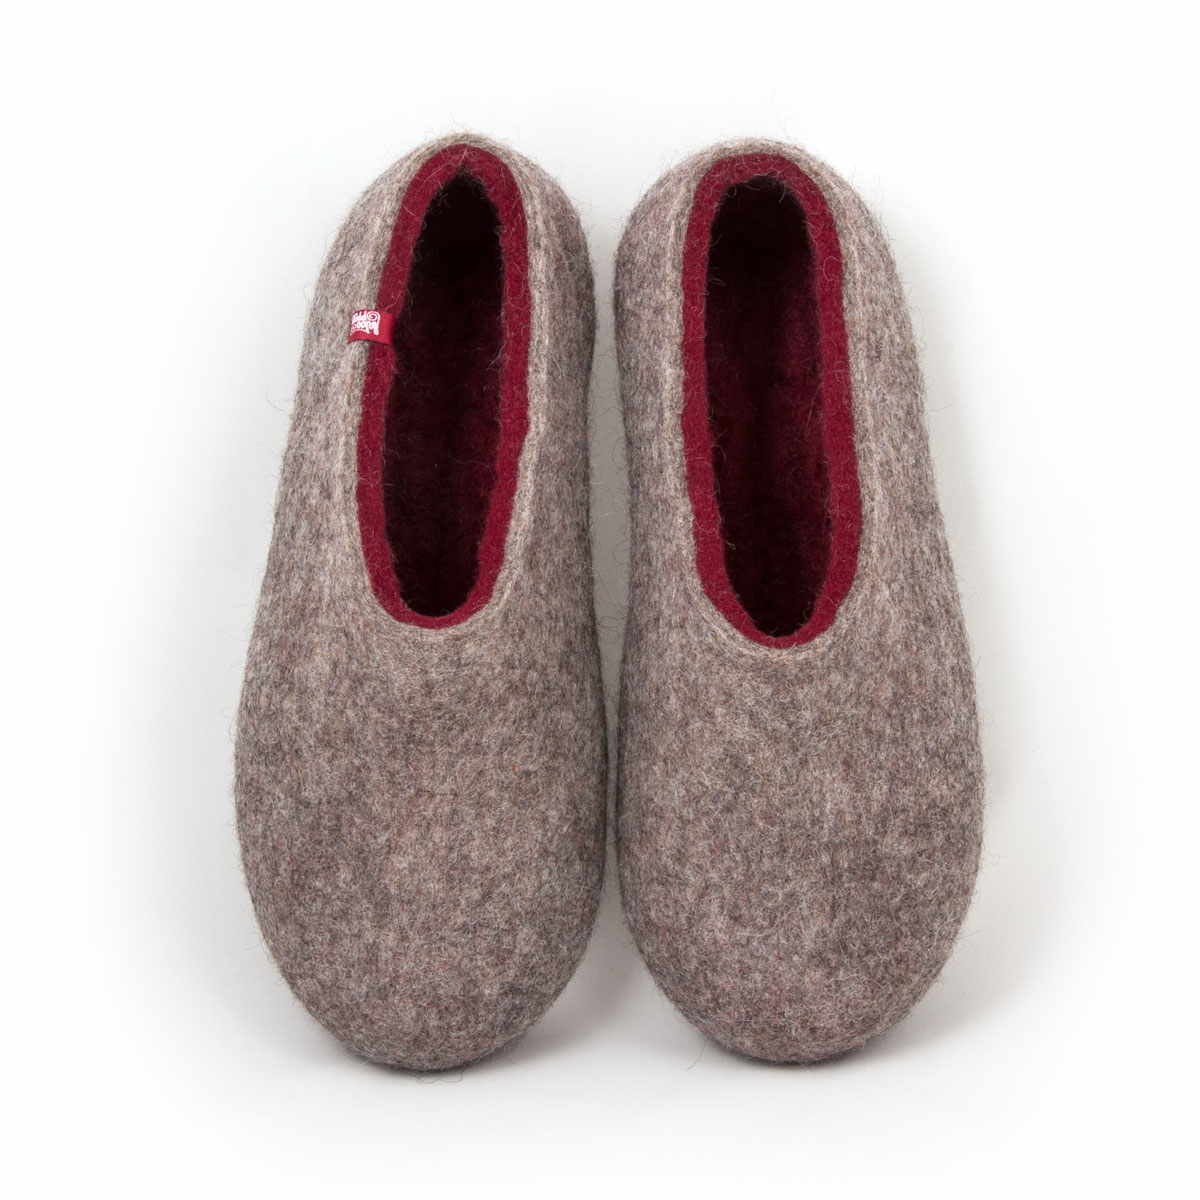 Mens wool slippers DUAL NATURAL dark red